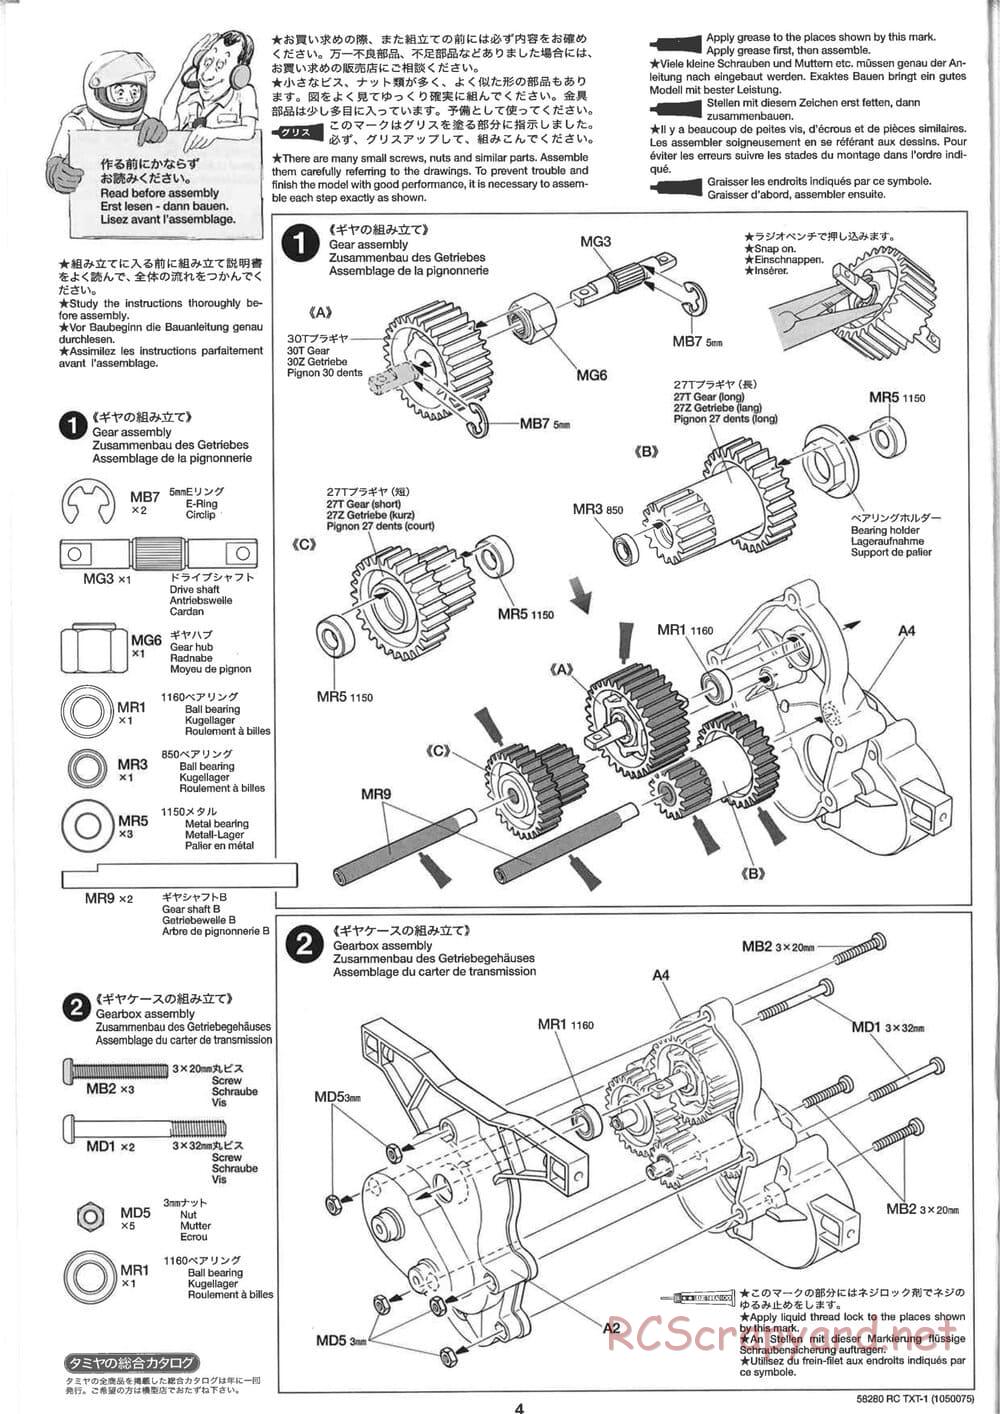 Tamiya - TXT-1 (Tamiya Xtreme Truck) Chassis - Manual - Page 4